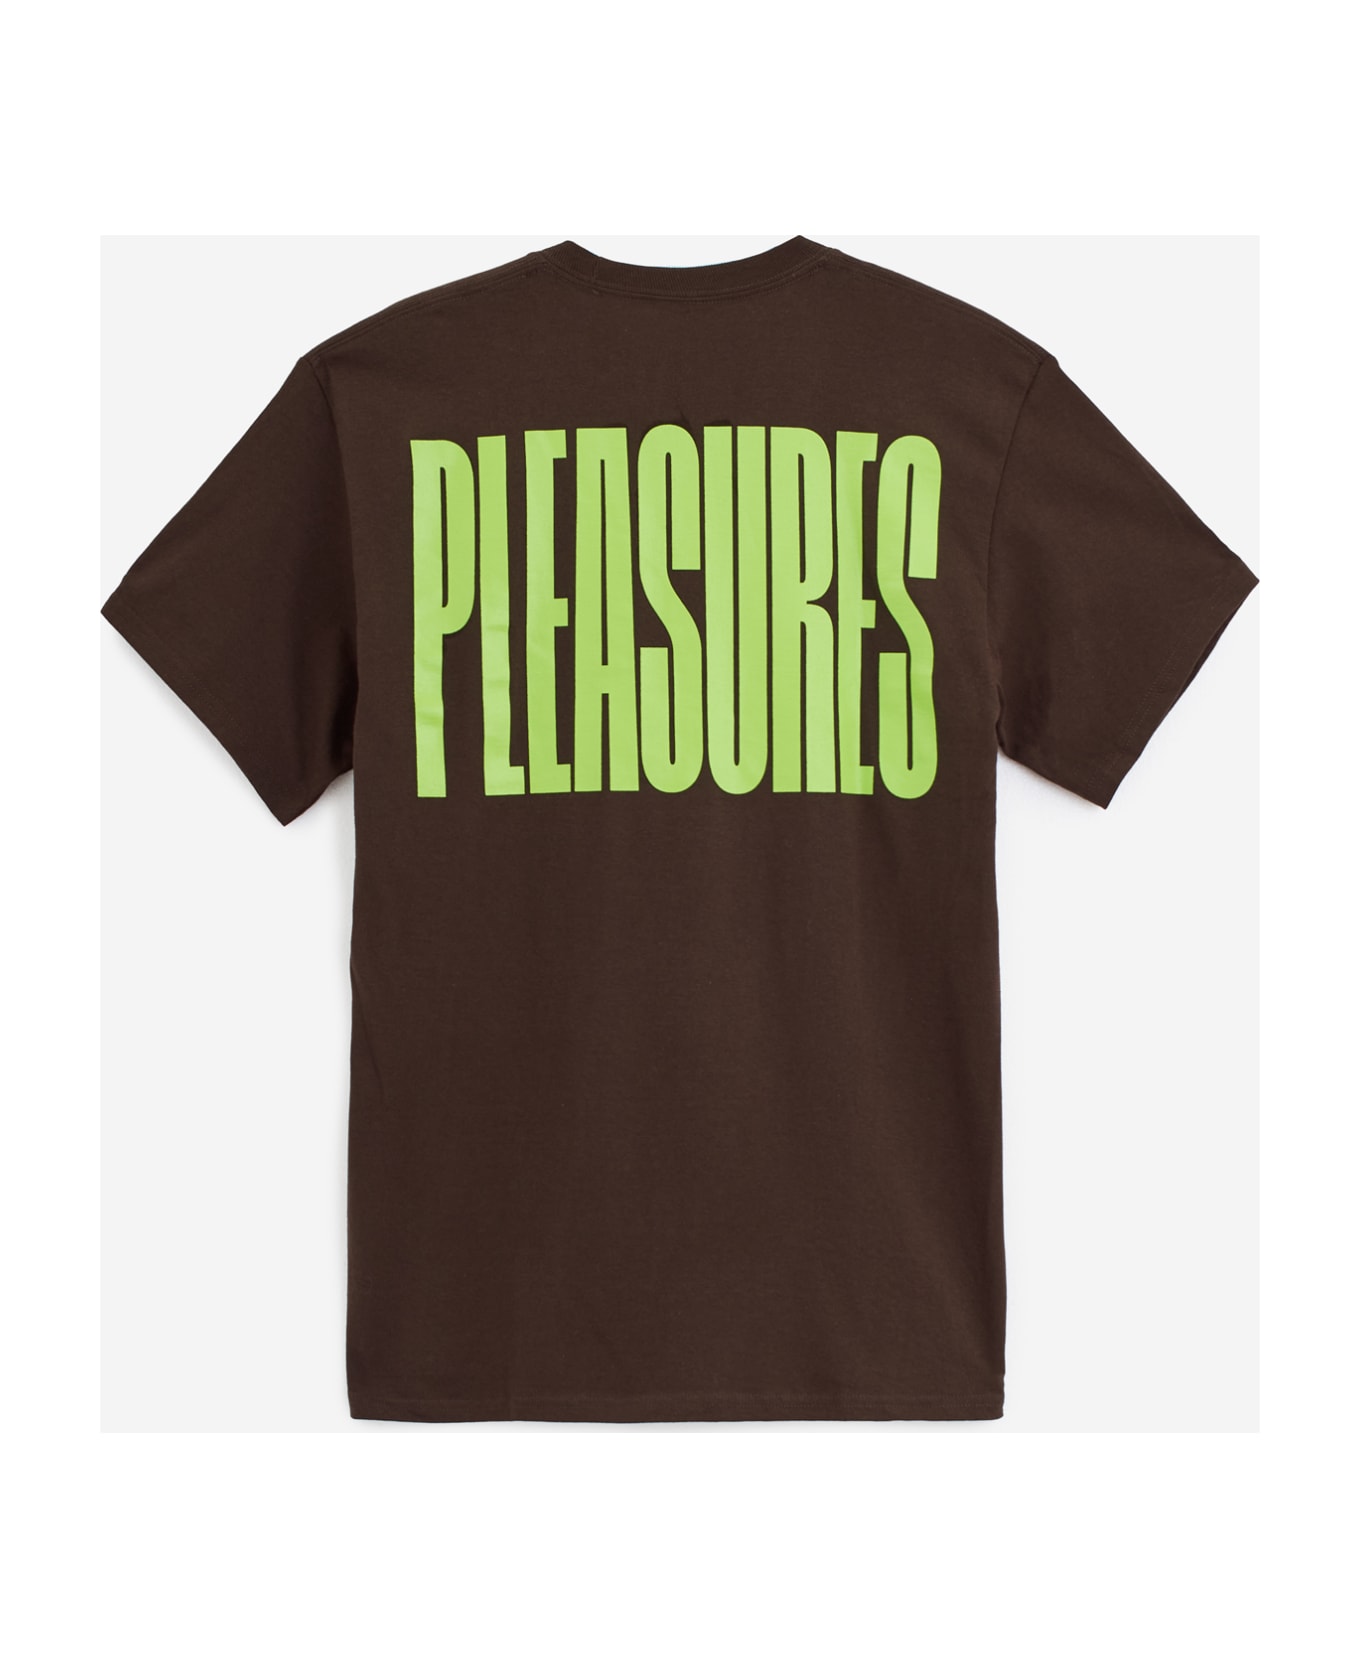 Pleasures Master T-shirt - brown